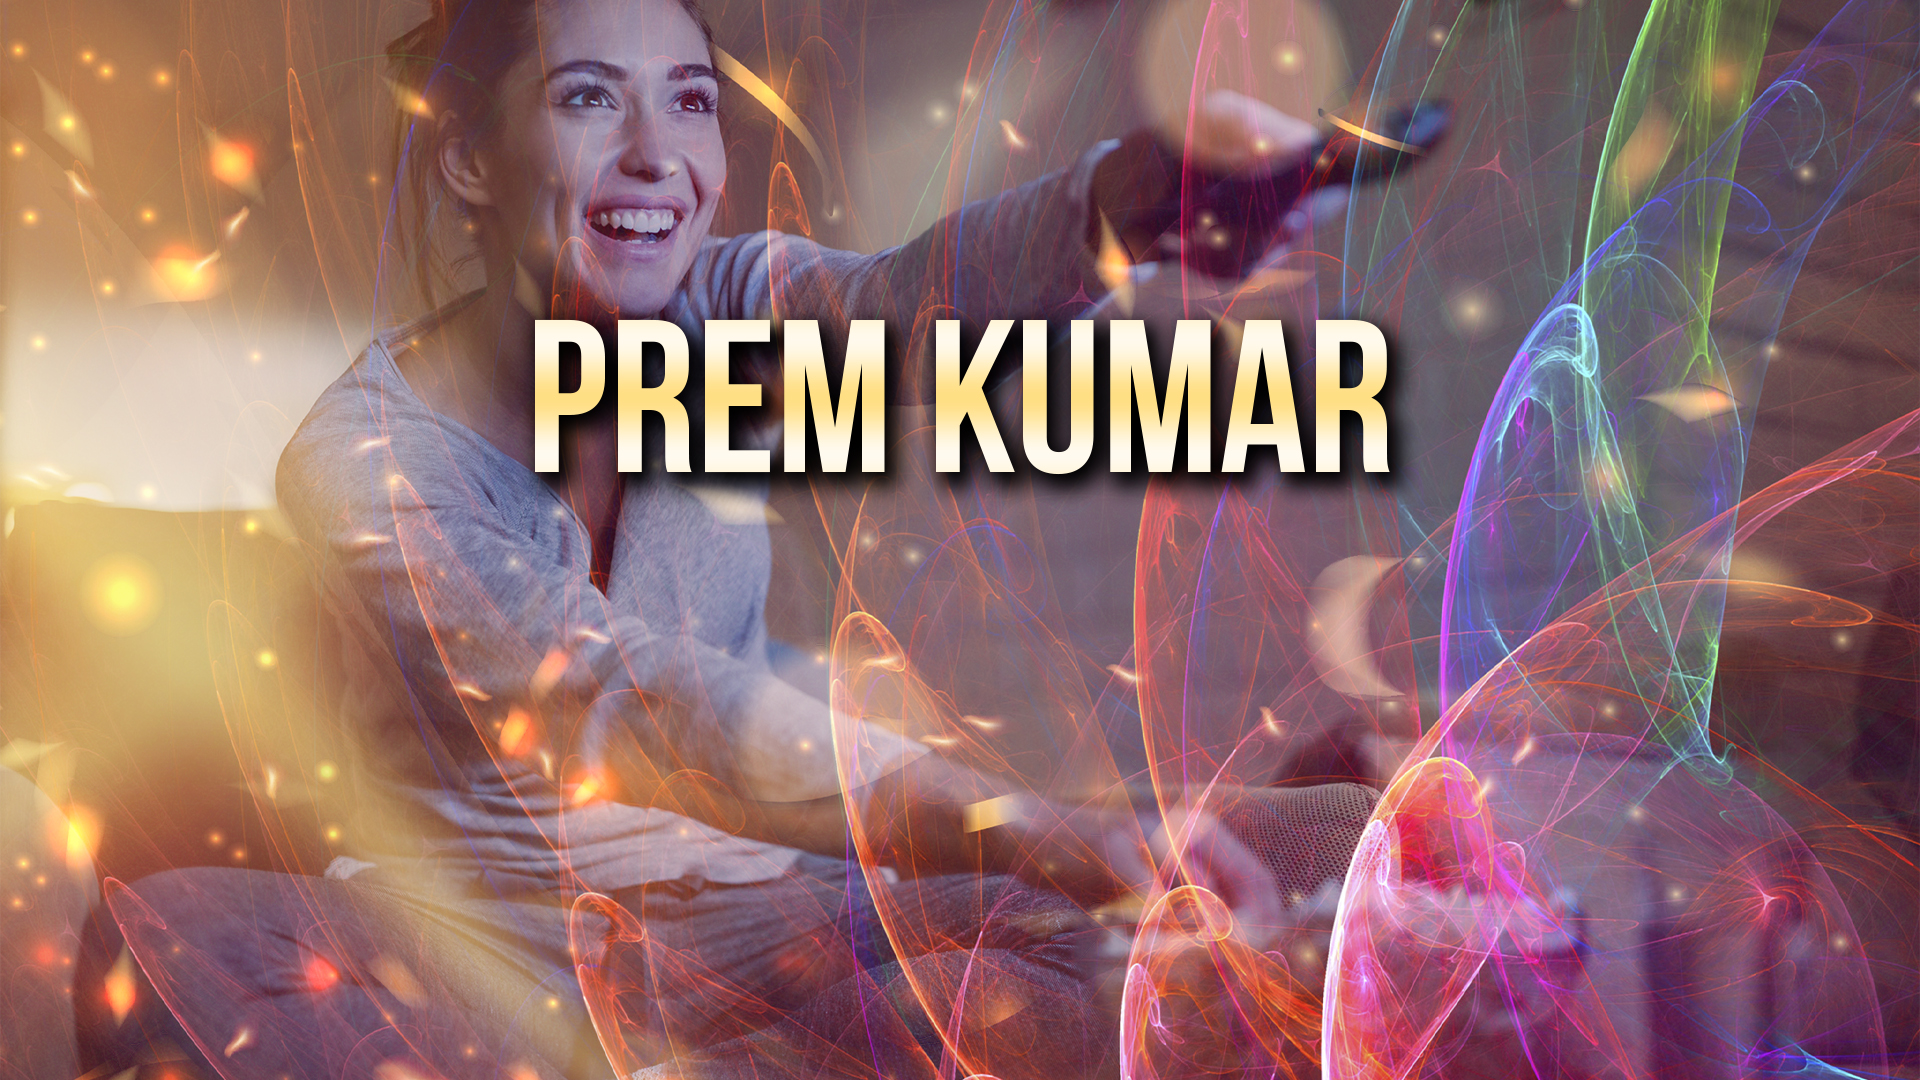 Prem Kumar Ending Explained [SPOILER!]